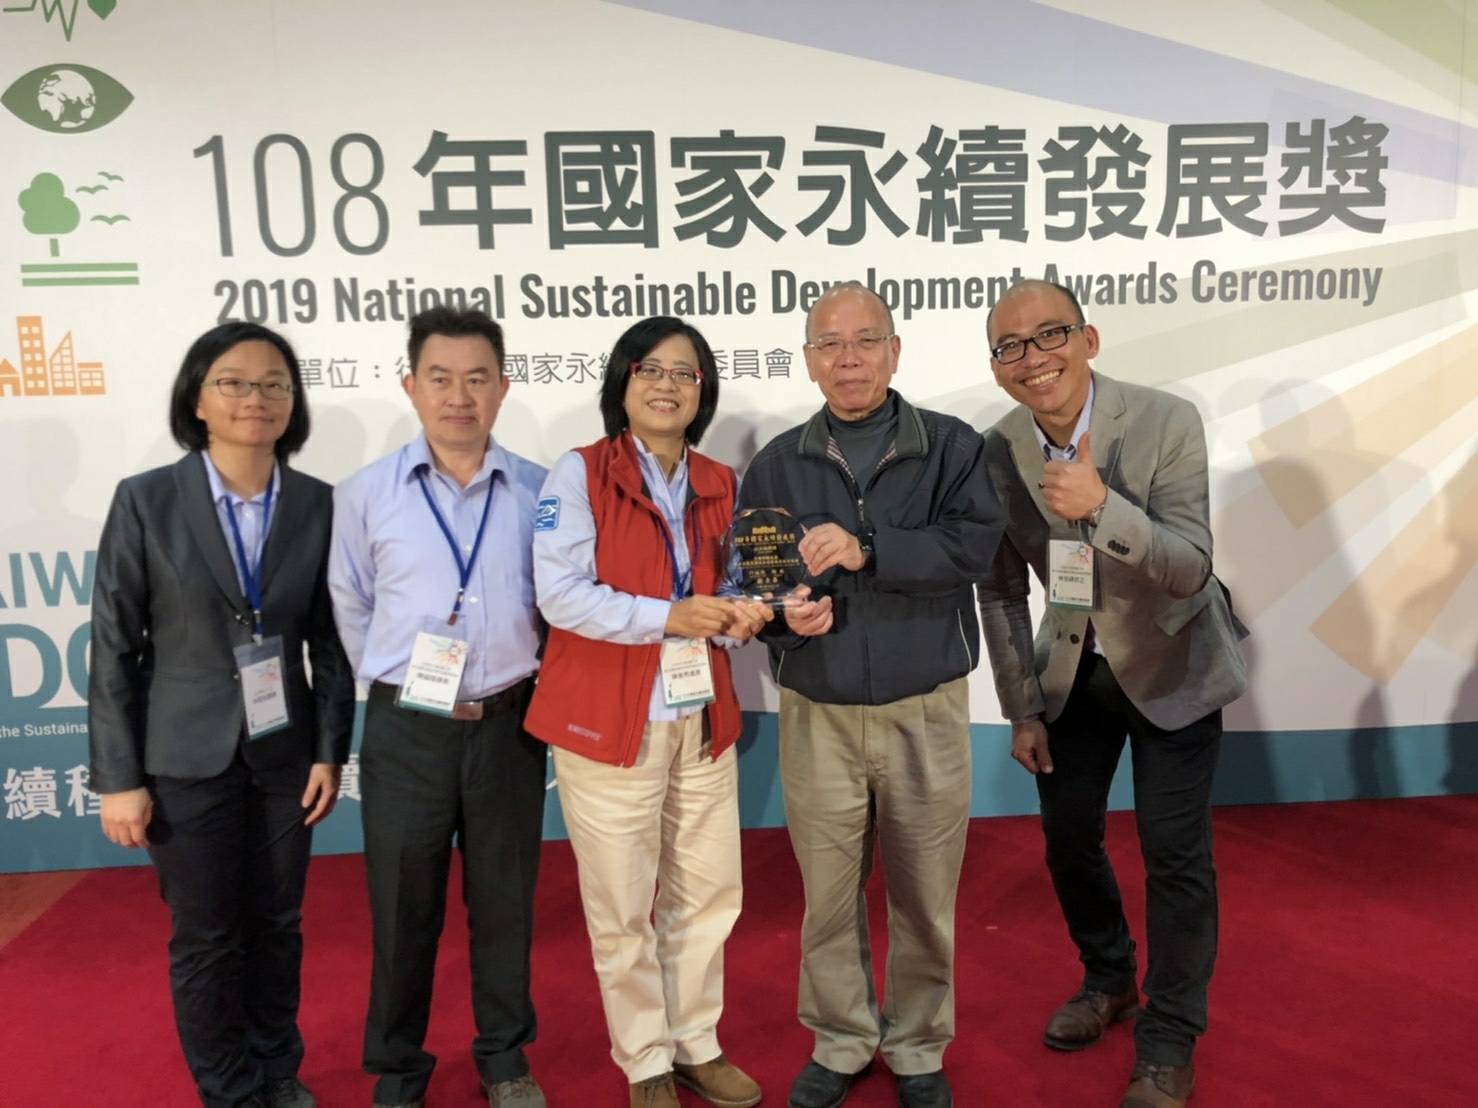 Член исполнительной власти Юань Чжан Цзинсен (второй справа) вручил награду Чэнь Мэйсю (в центре), директору Северо-восточного и Иланского офисов управления